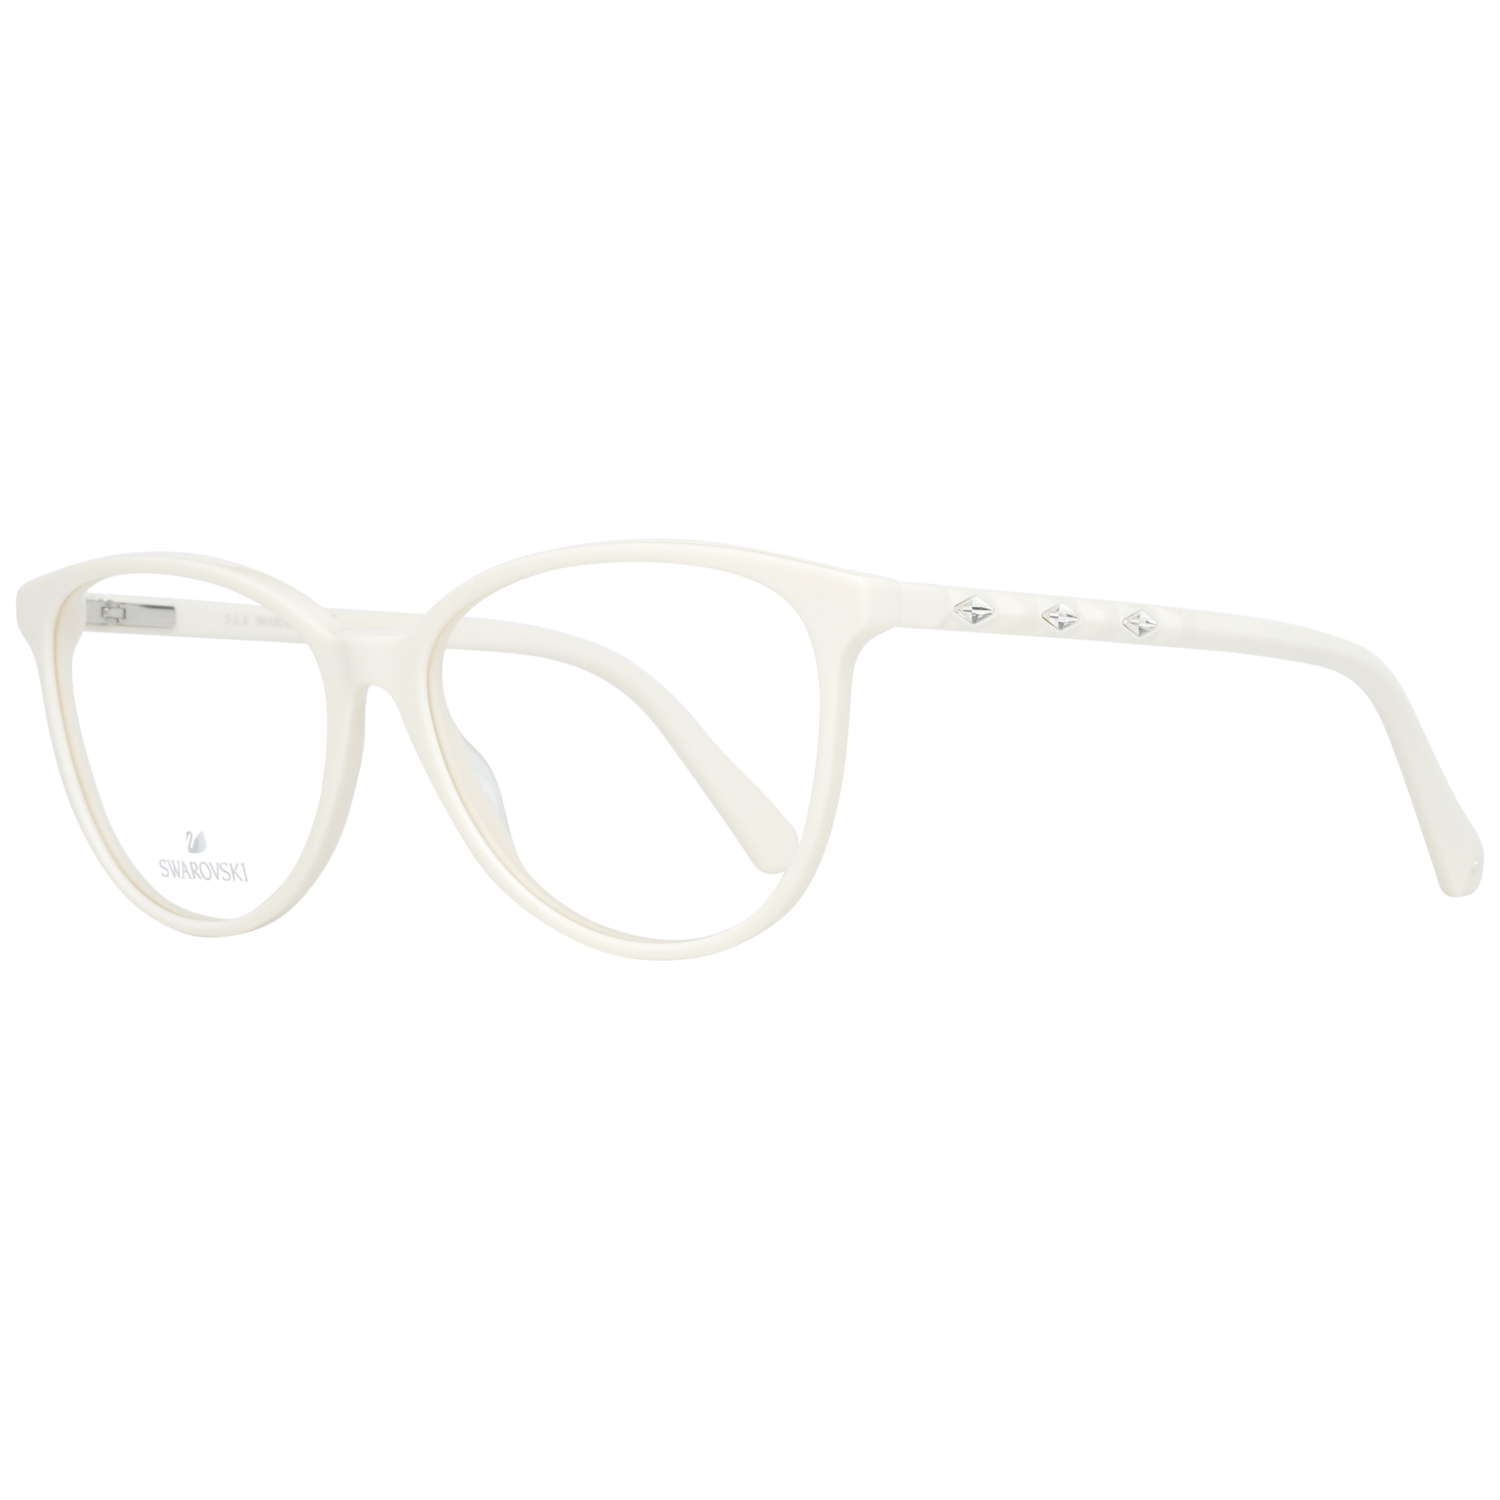 Swarovski Frames Swarovski Women Glasses Optical Frame SK5301 021 54 Eyeglasses Eyewear UK USA Australia 